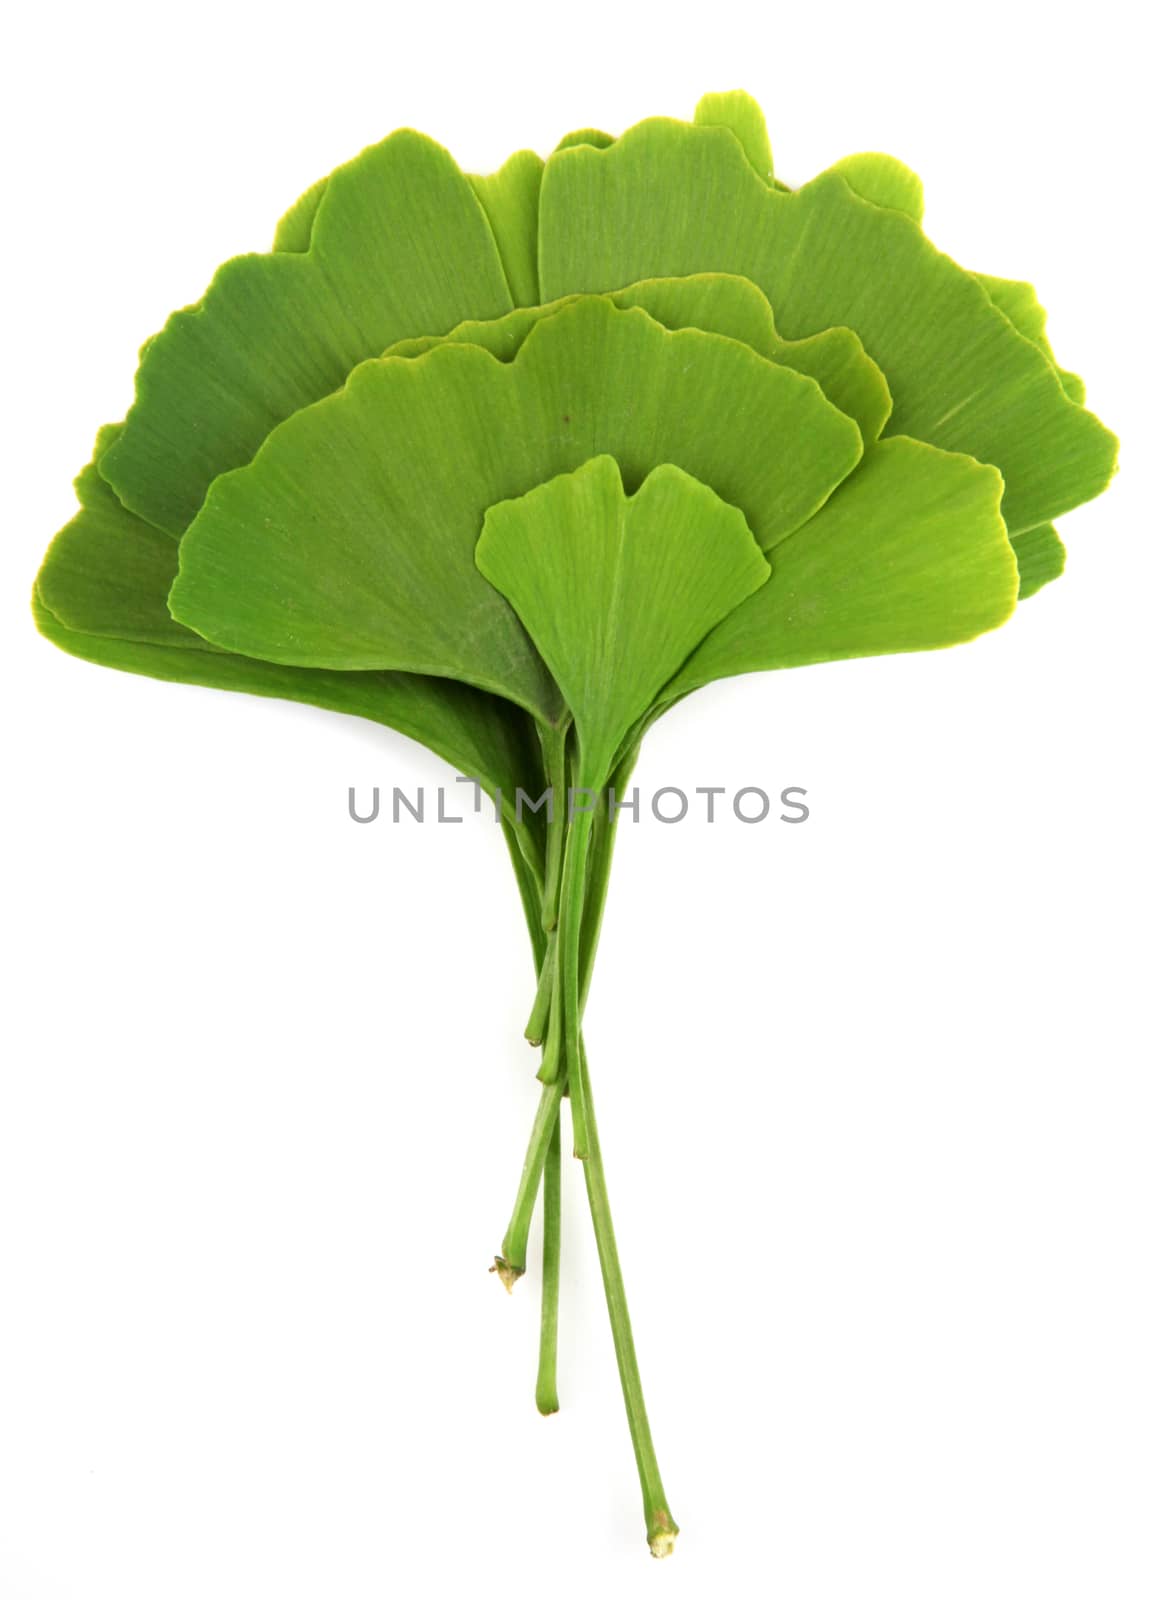 ginkgo biloba leaves isolated on white background